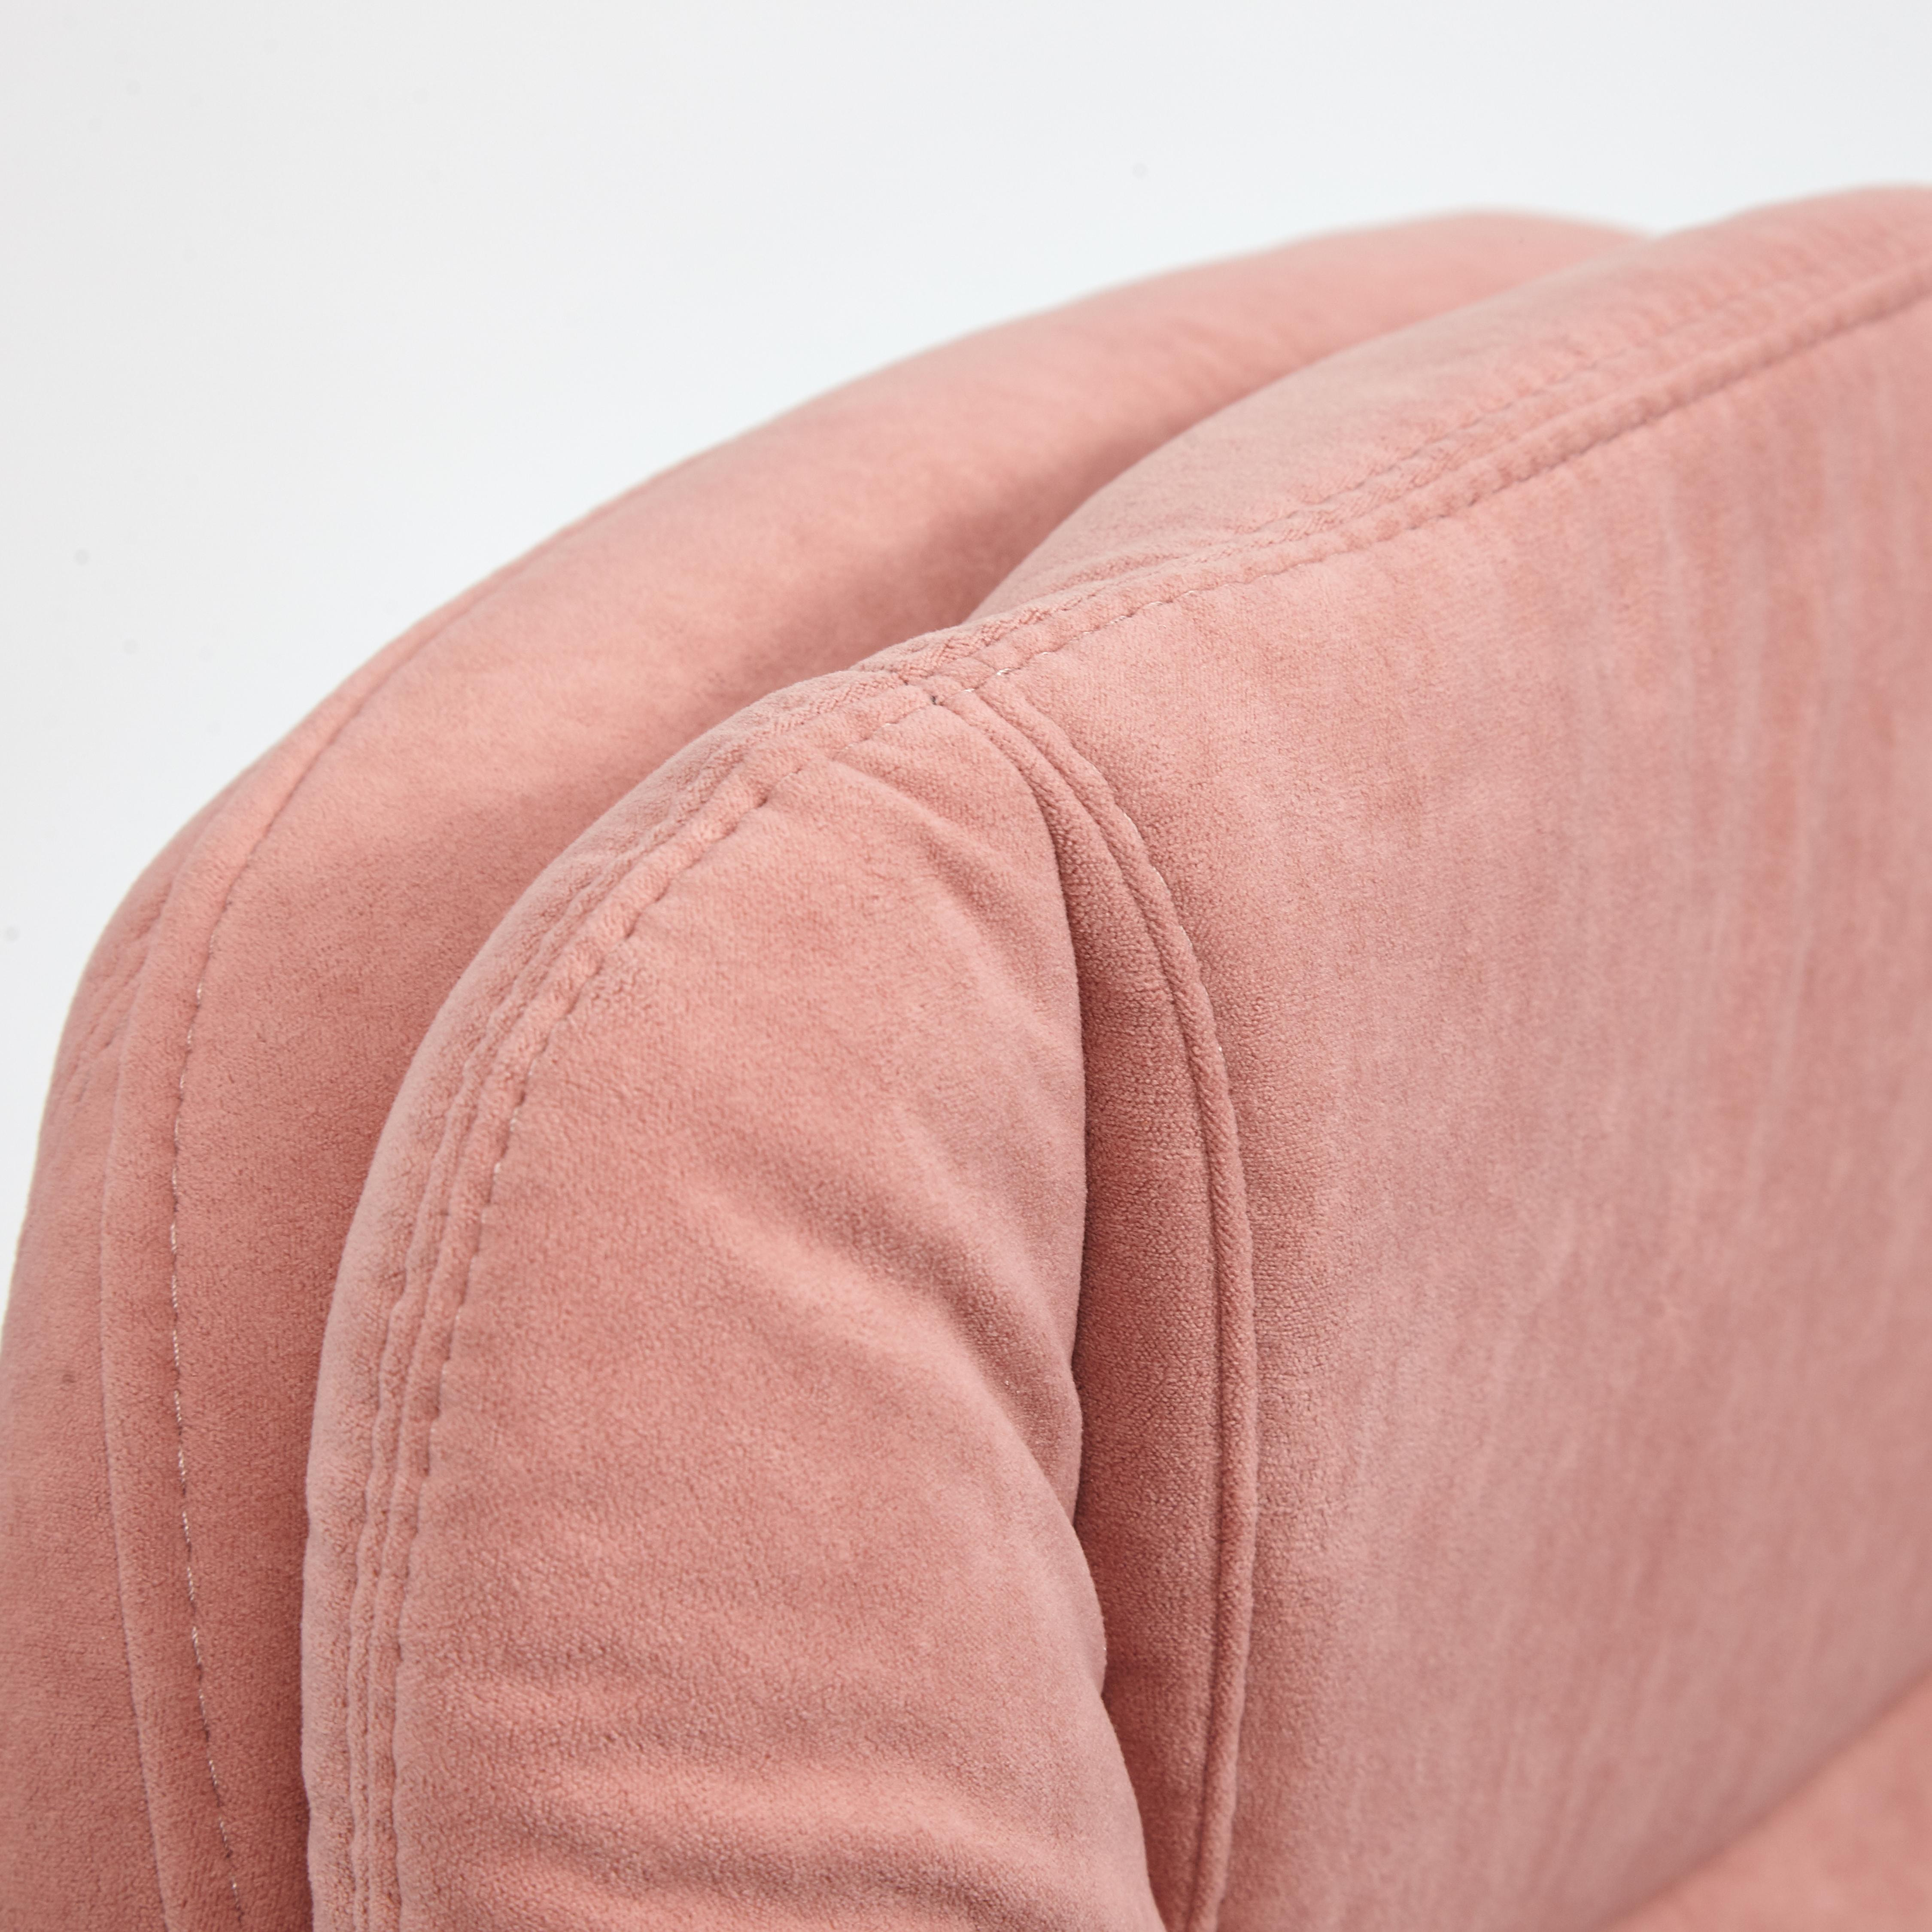 Кресло SOFTY LUX флок , розовый, 137